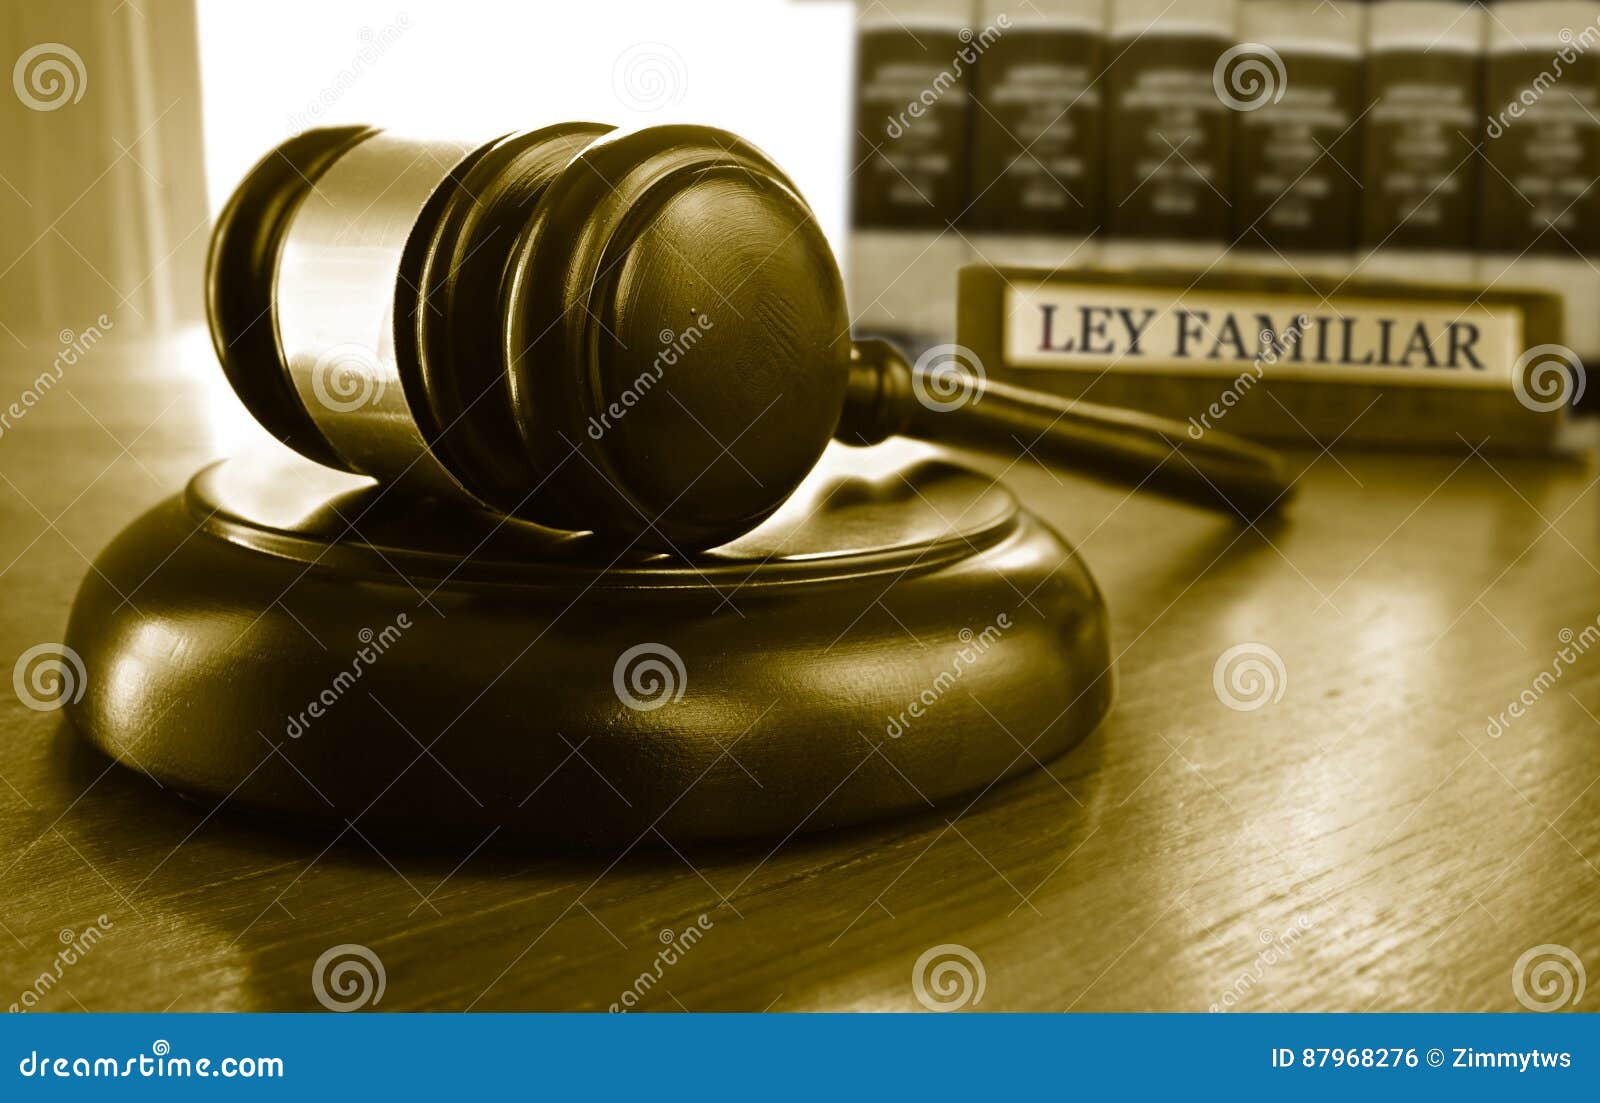 ley familiar gavel